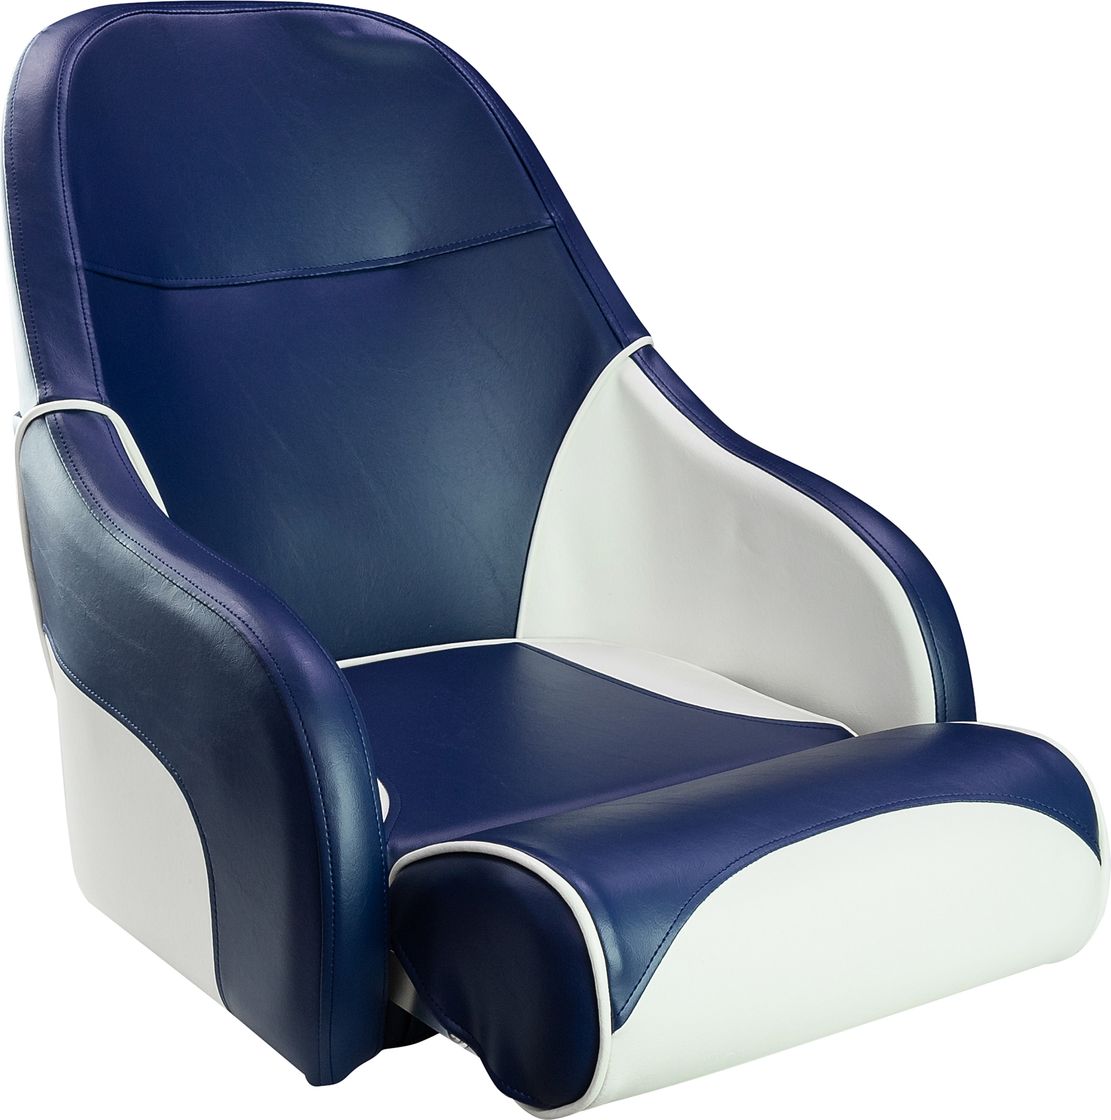 Кресло с болстером Ocean Flip Up, обивка синий/белый винил 13127WB-MR утюг kitfort kt 2604 белый синий